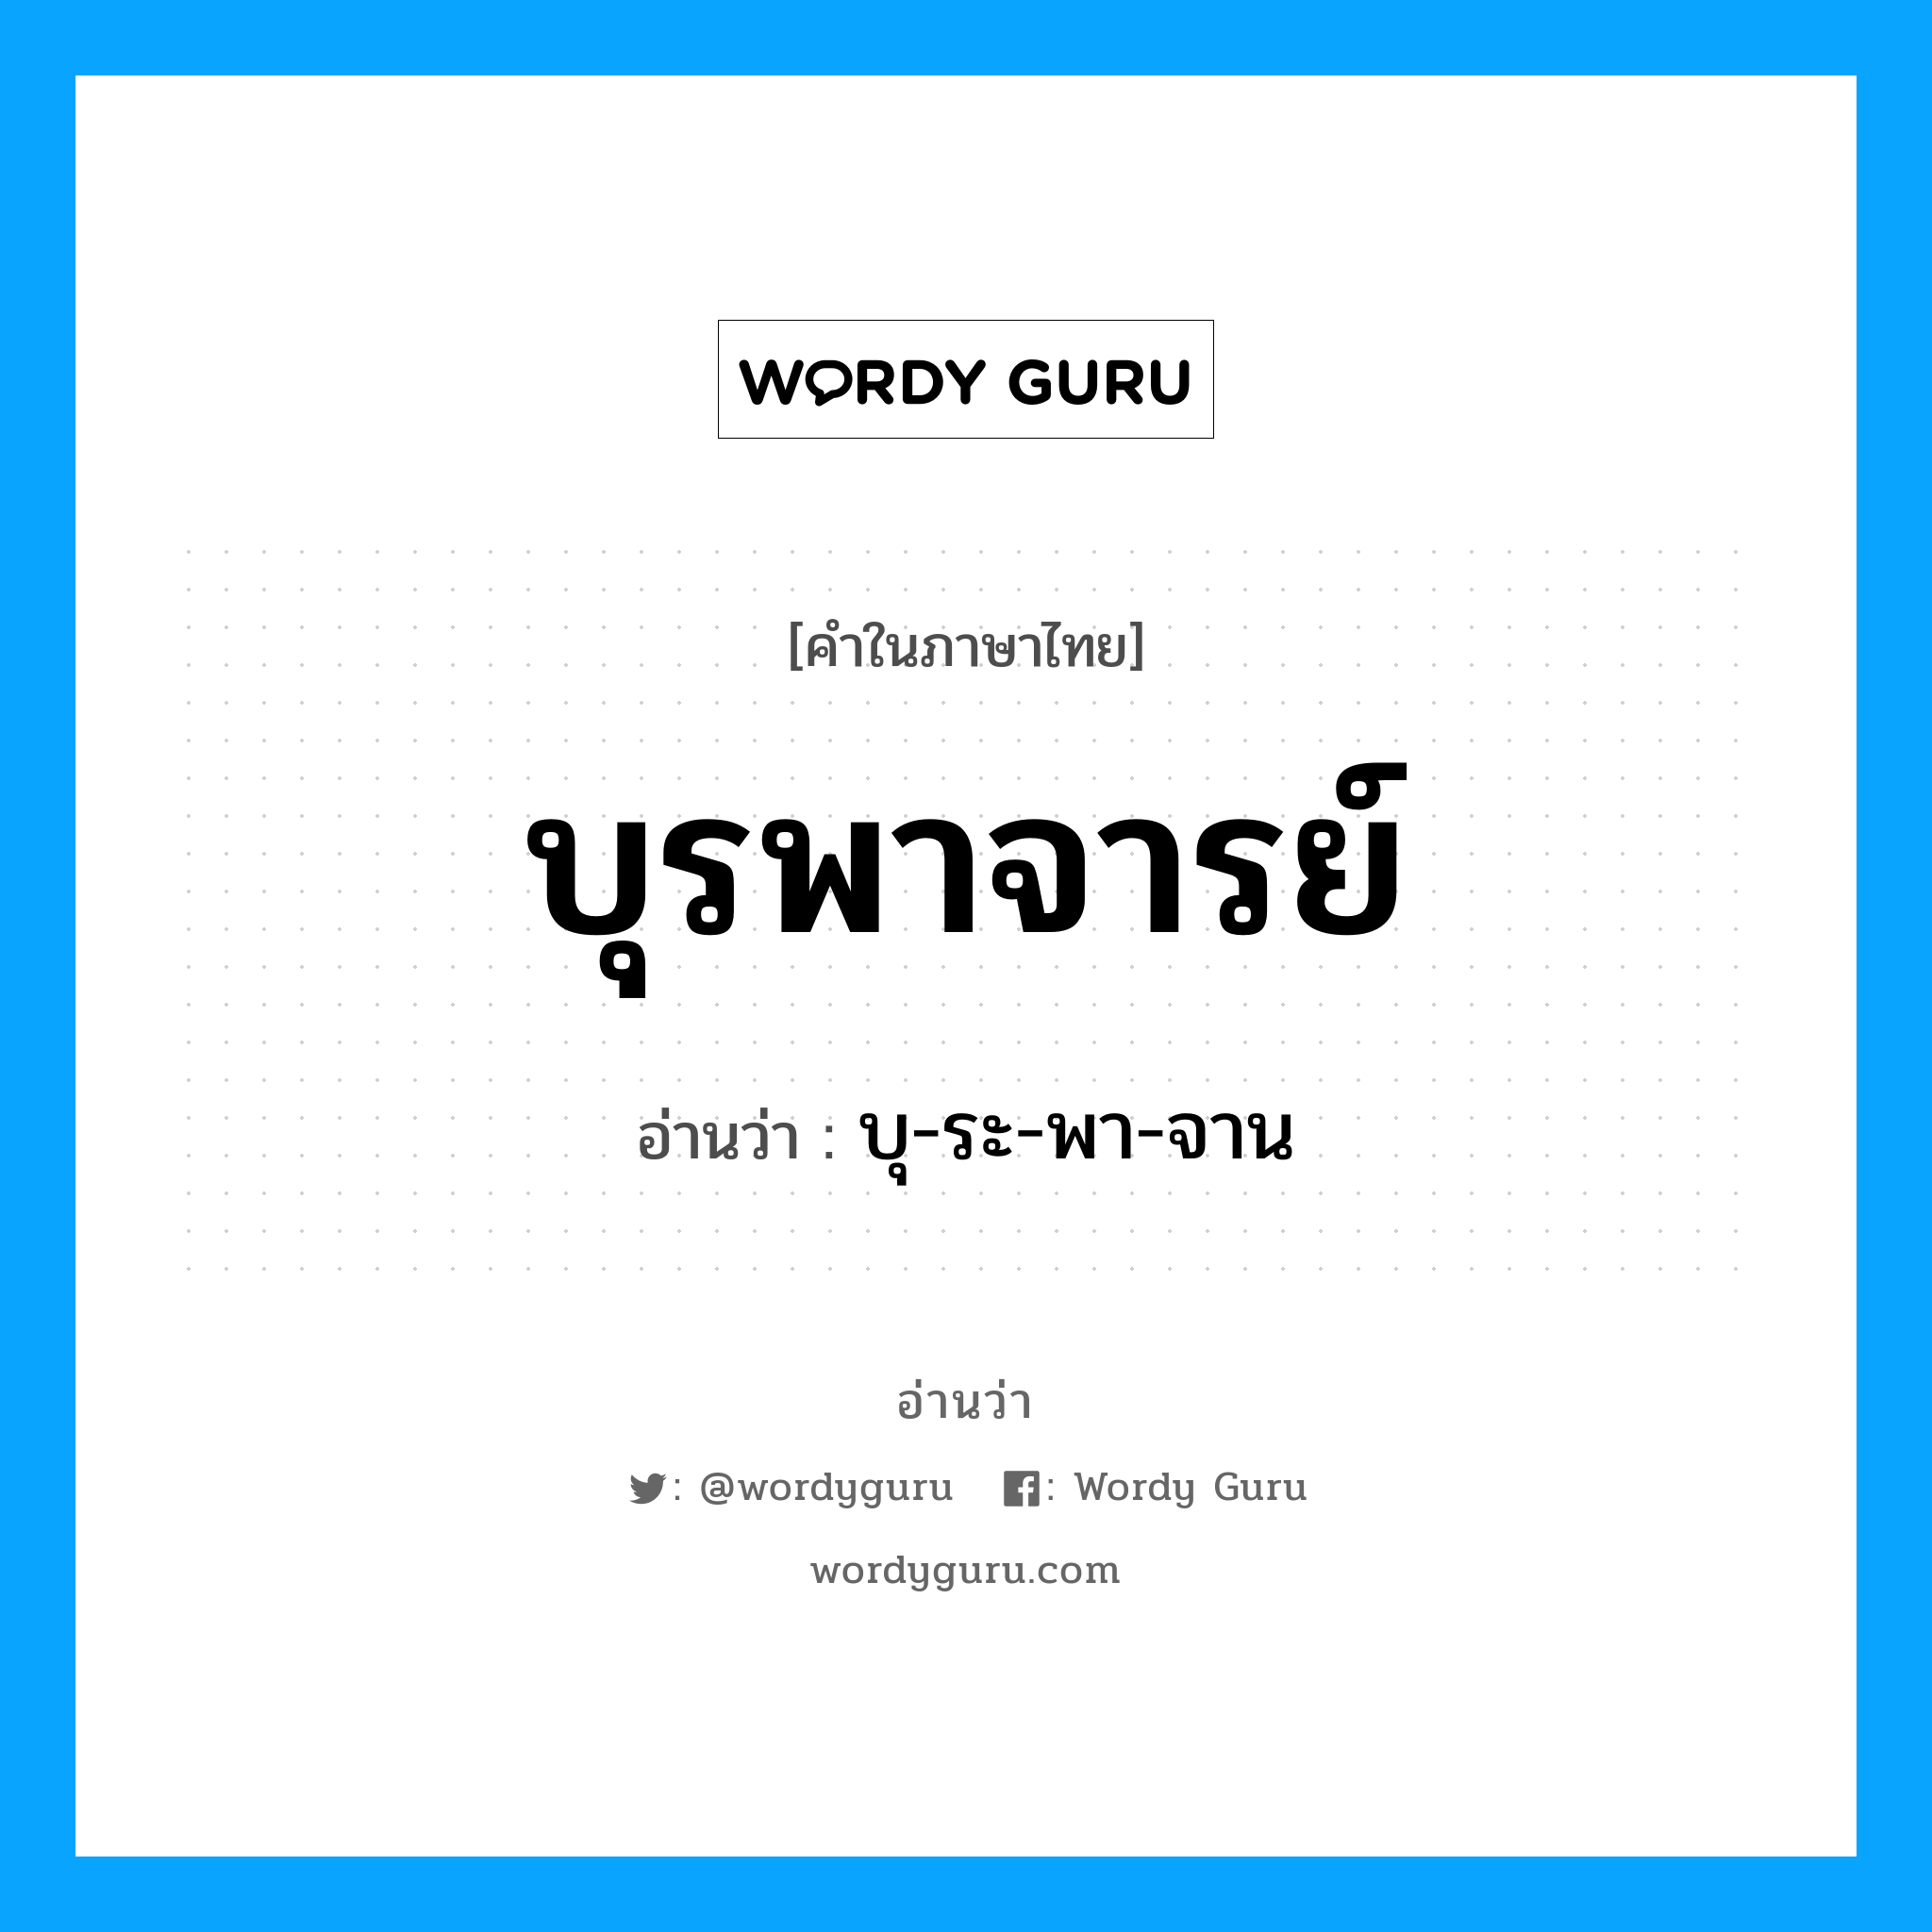 บุ-ระ-พา-จาน เป็นคำอ่านของคำไหน?, คำในภาษาไทย บุ-ระ-พา-จาน อ่านว่า บุรพาจารย์